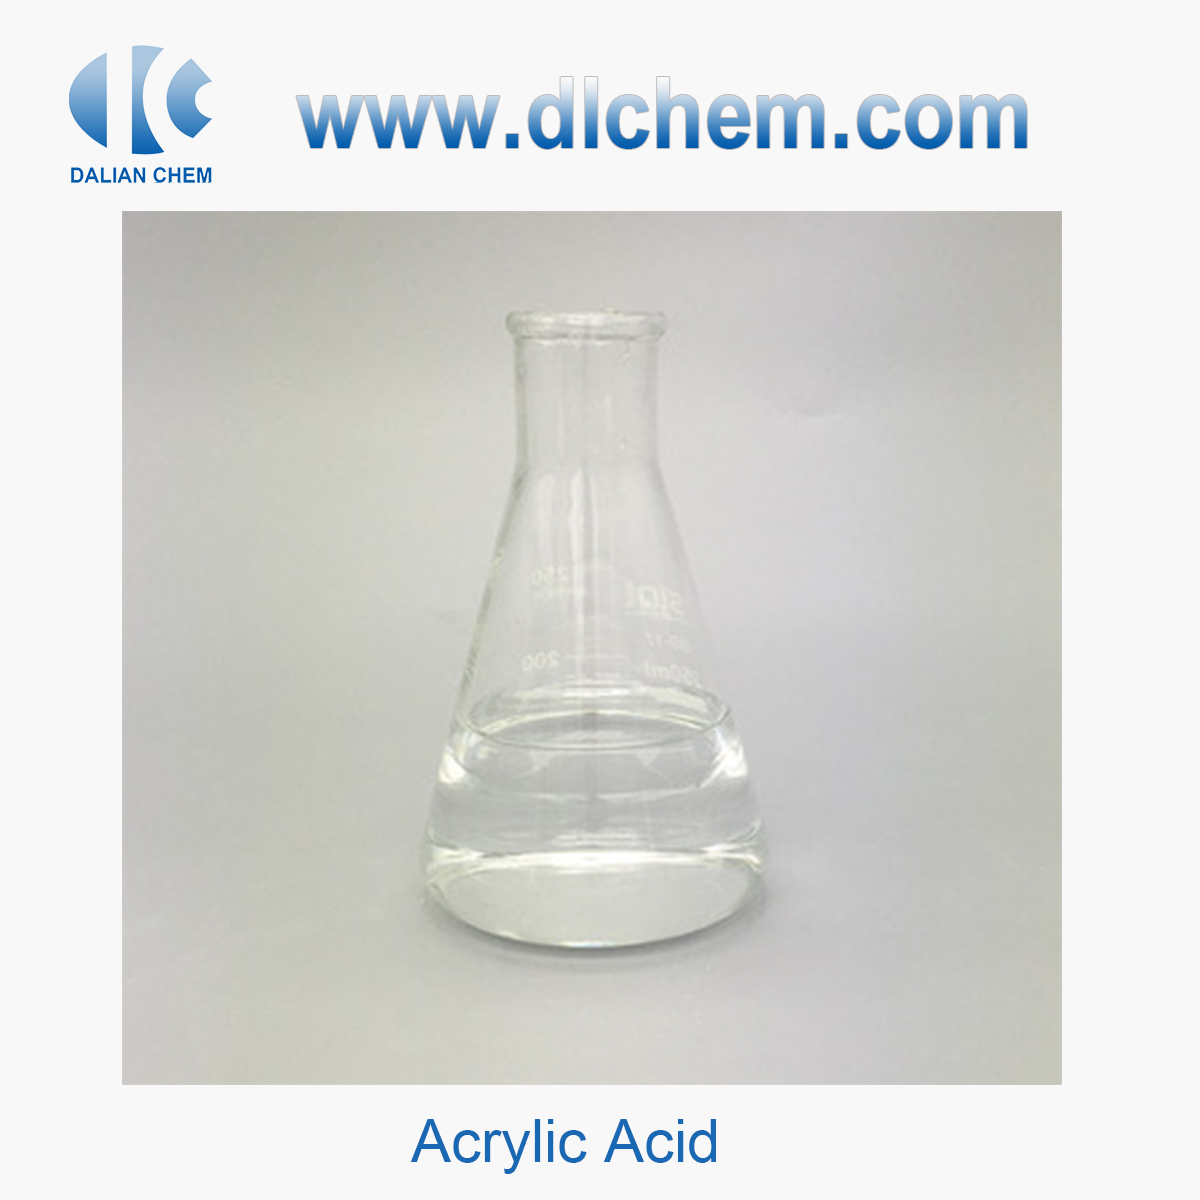 Acrylic acid CAS No. 79-10-7